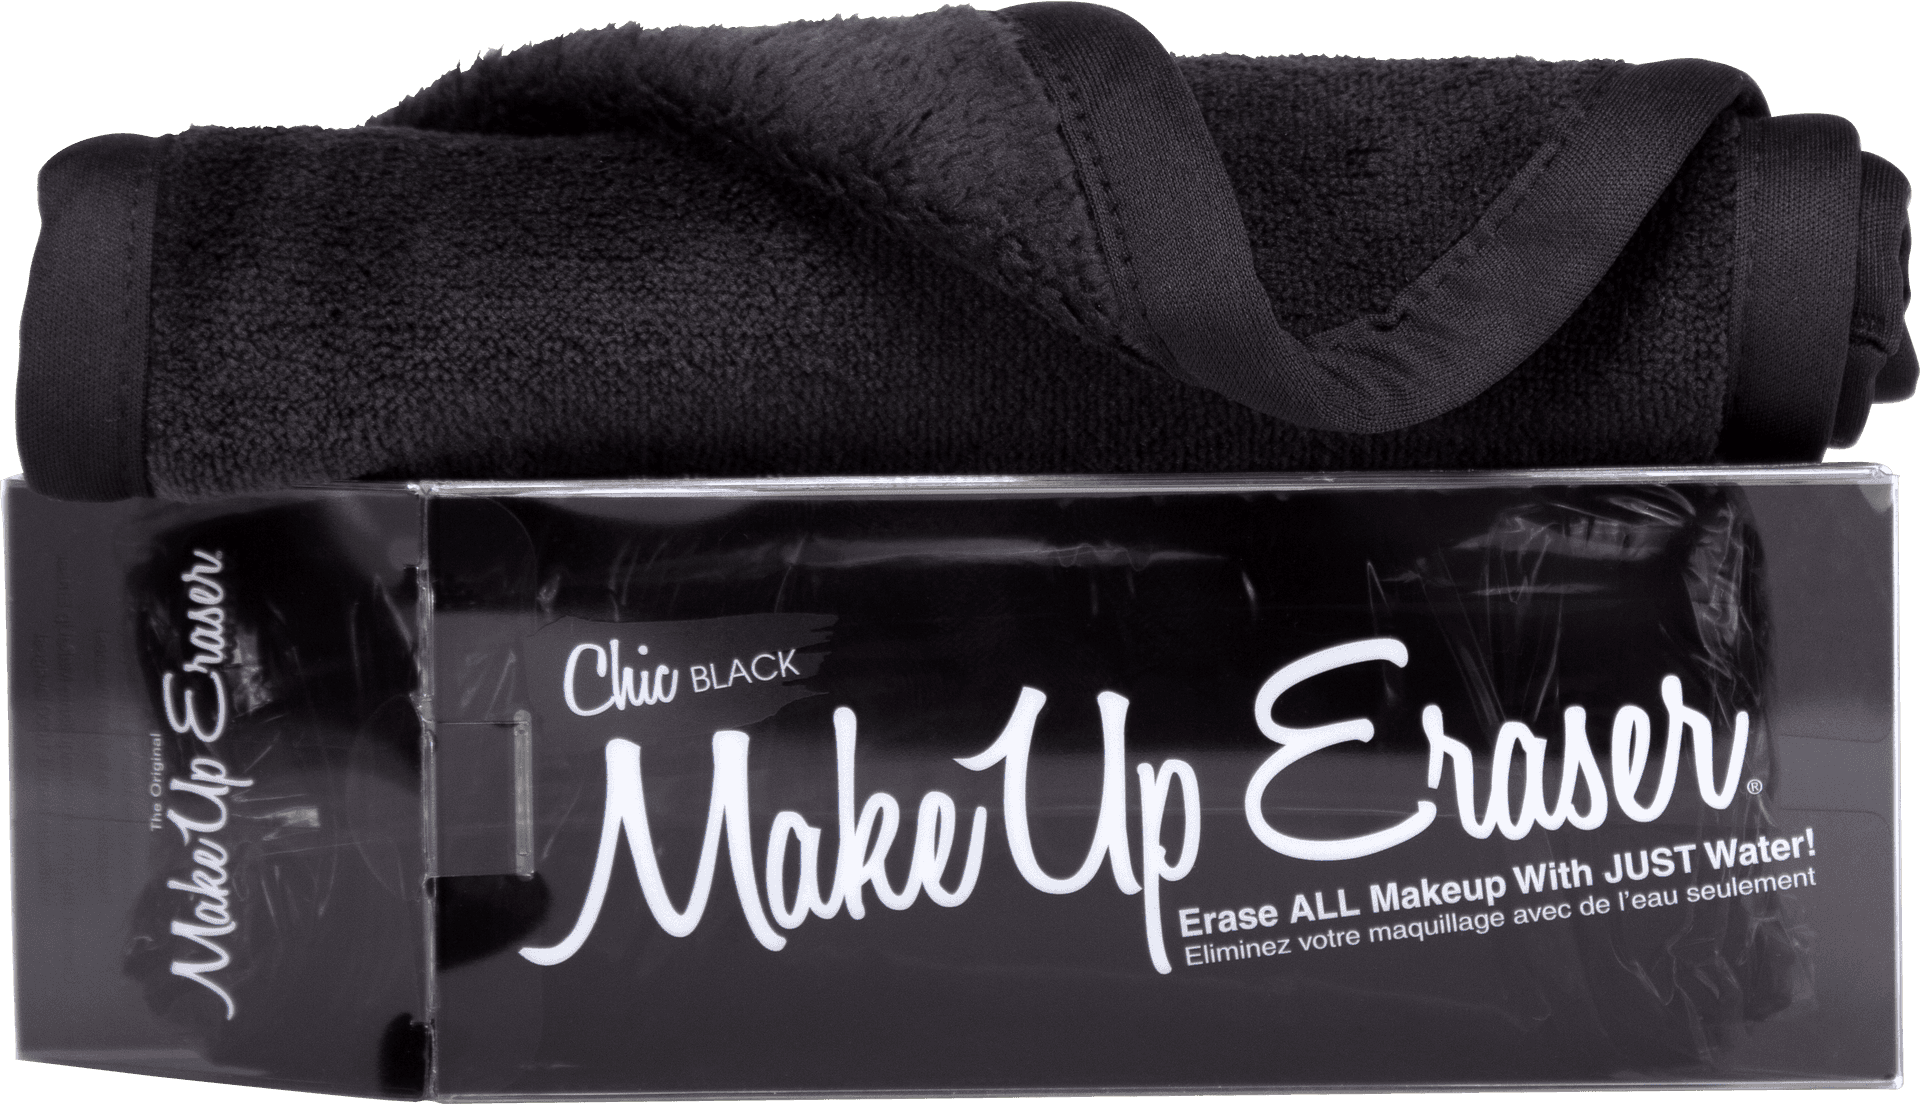 Black Makeup Eraser Towel Packaging PNG